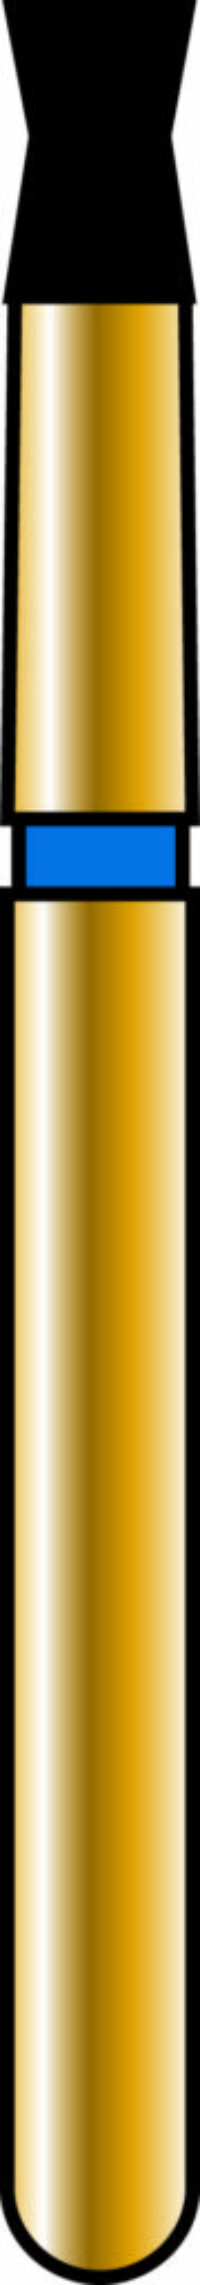 Double Cone 16-2.5mm Gold Diamond Bur - Coarse Grit